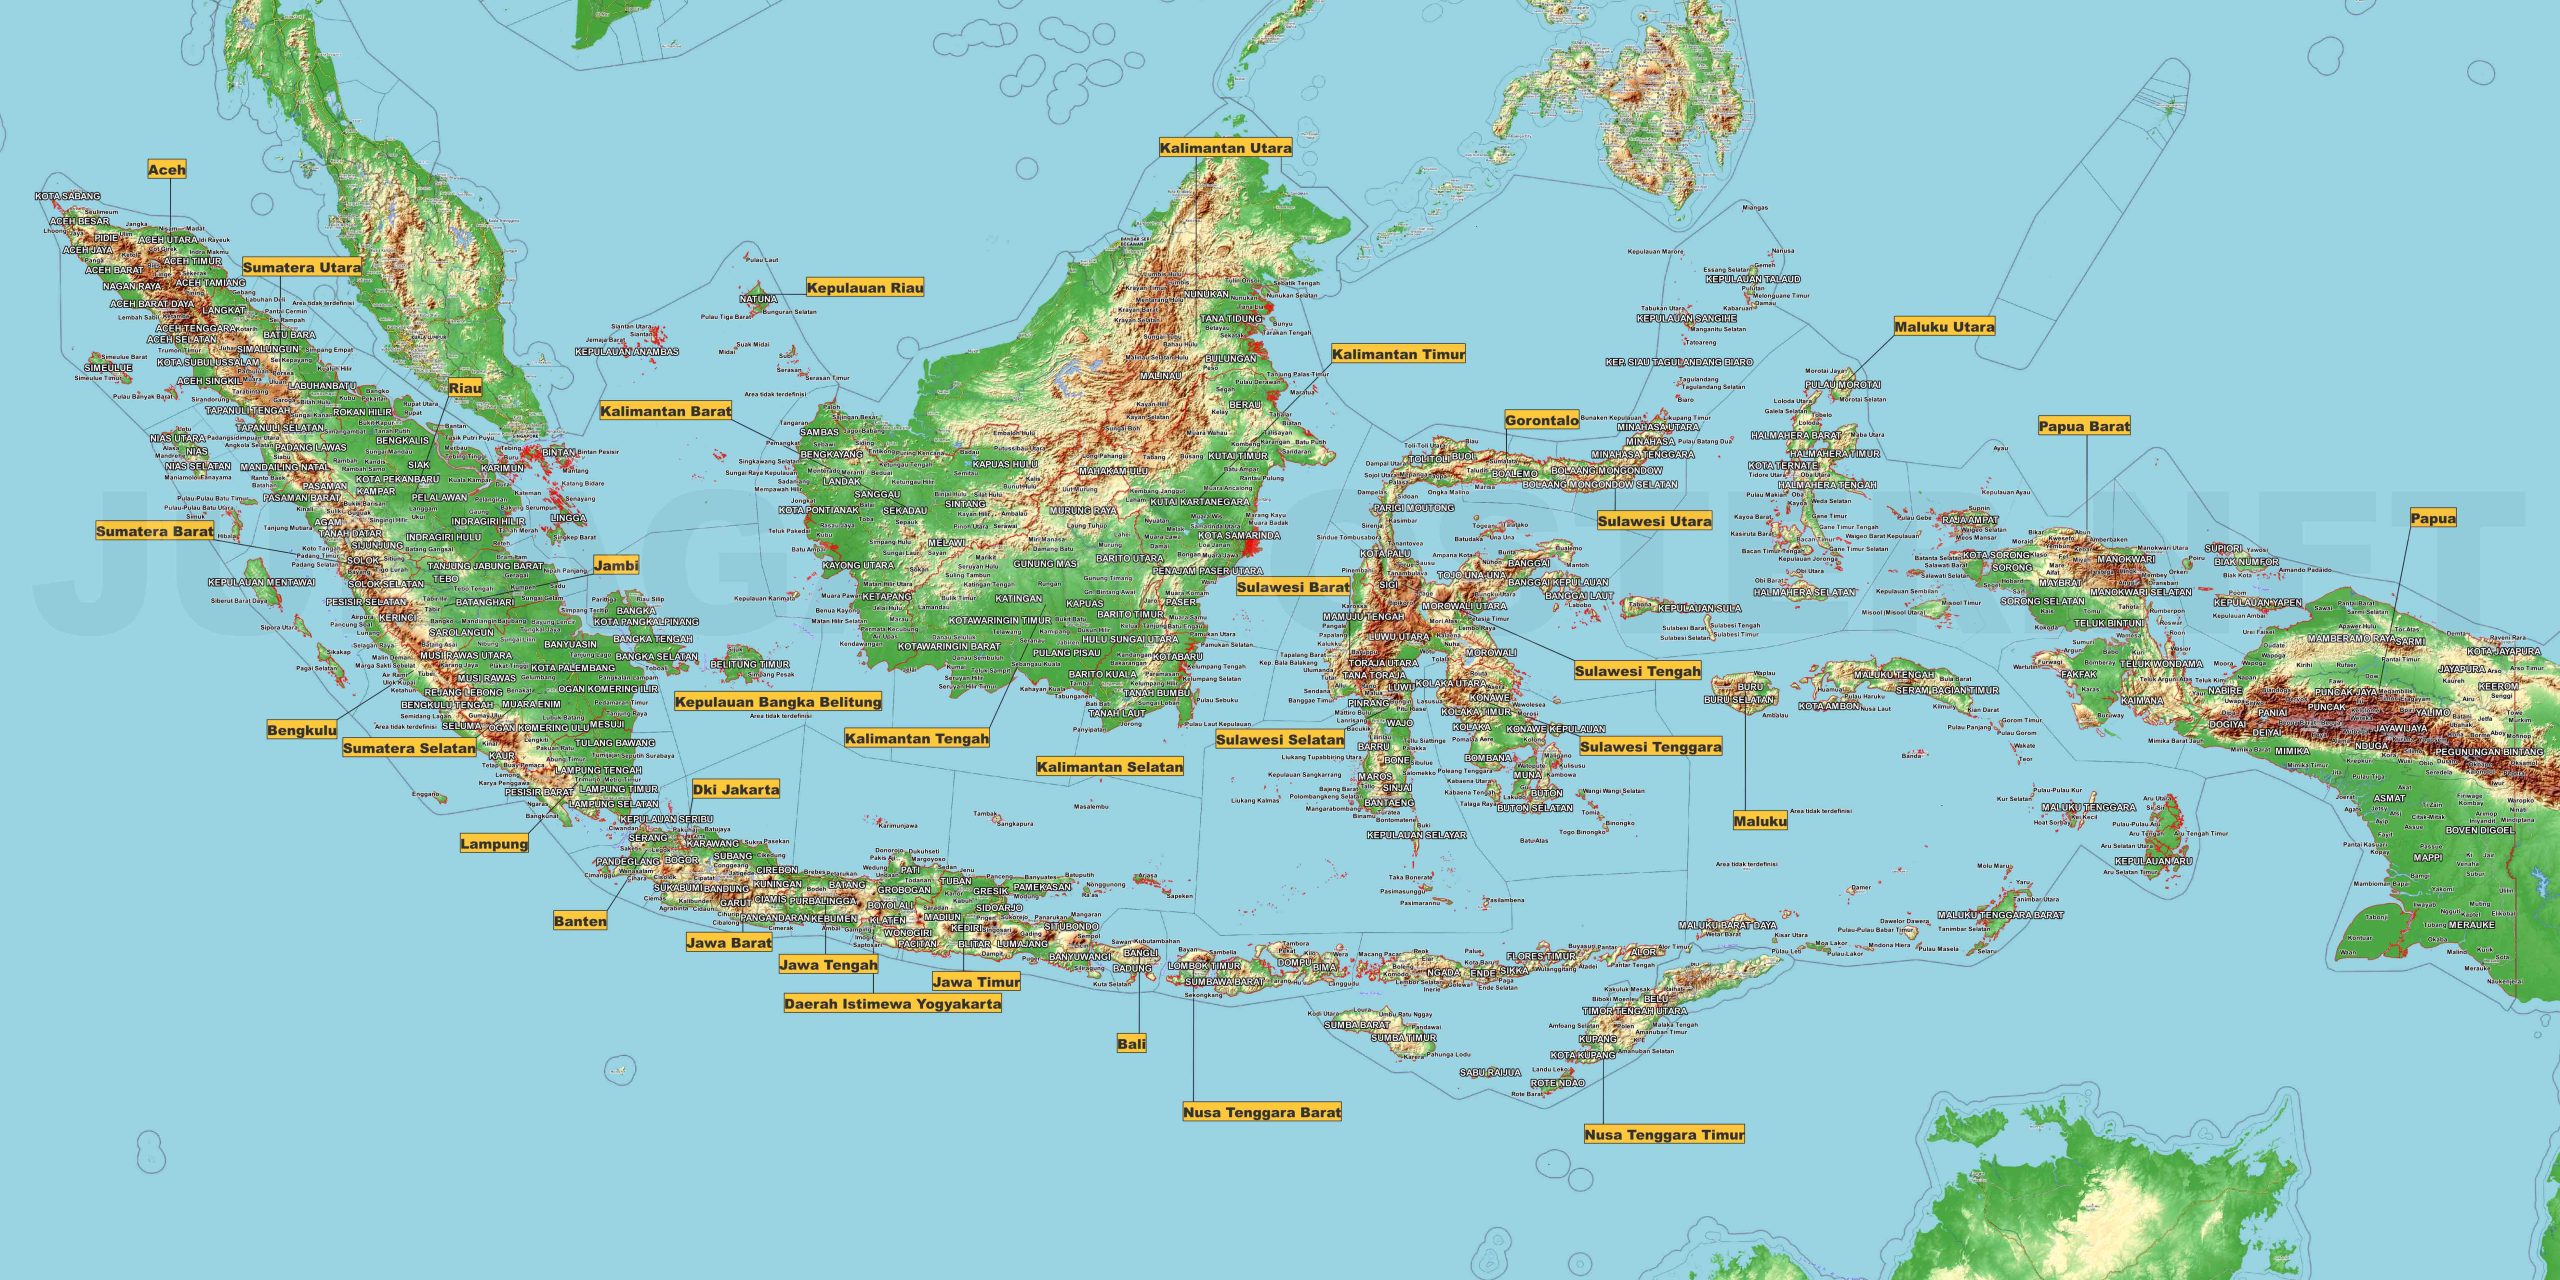 Eksplorasi Peta Indonesia Kotak-Kotak: Mengungkap Keindahan Keanekaragaman Tanah Air